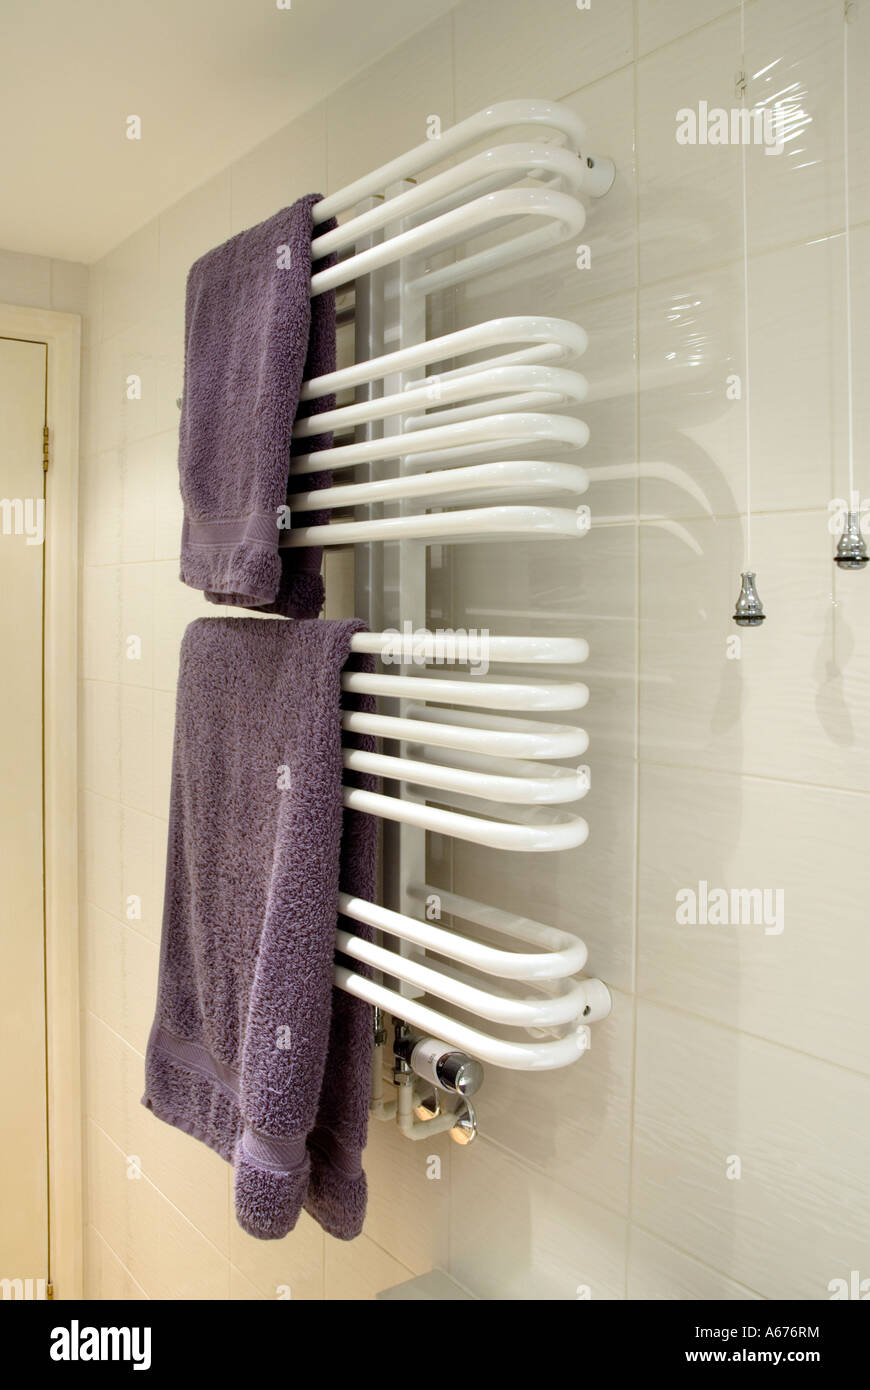 Salle de bains salle de douche chauffage central porte-serviette tubes pour  la chambre chauffage et serviettes chauds et secs fixés au blanc glacé  Carreaux muraux corde à tirer pour lumière Angleterre Royaume-Uni